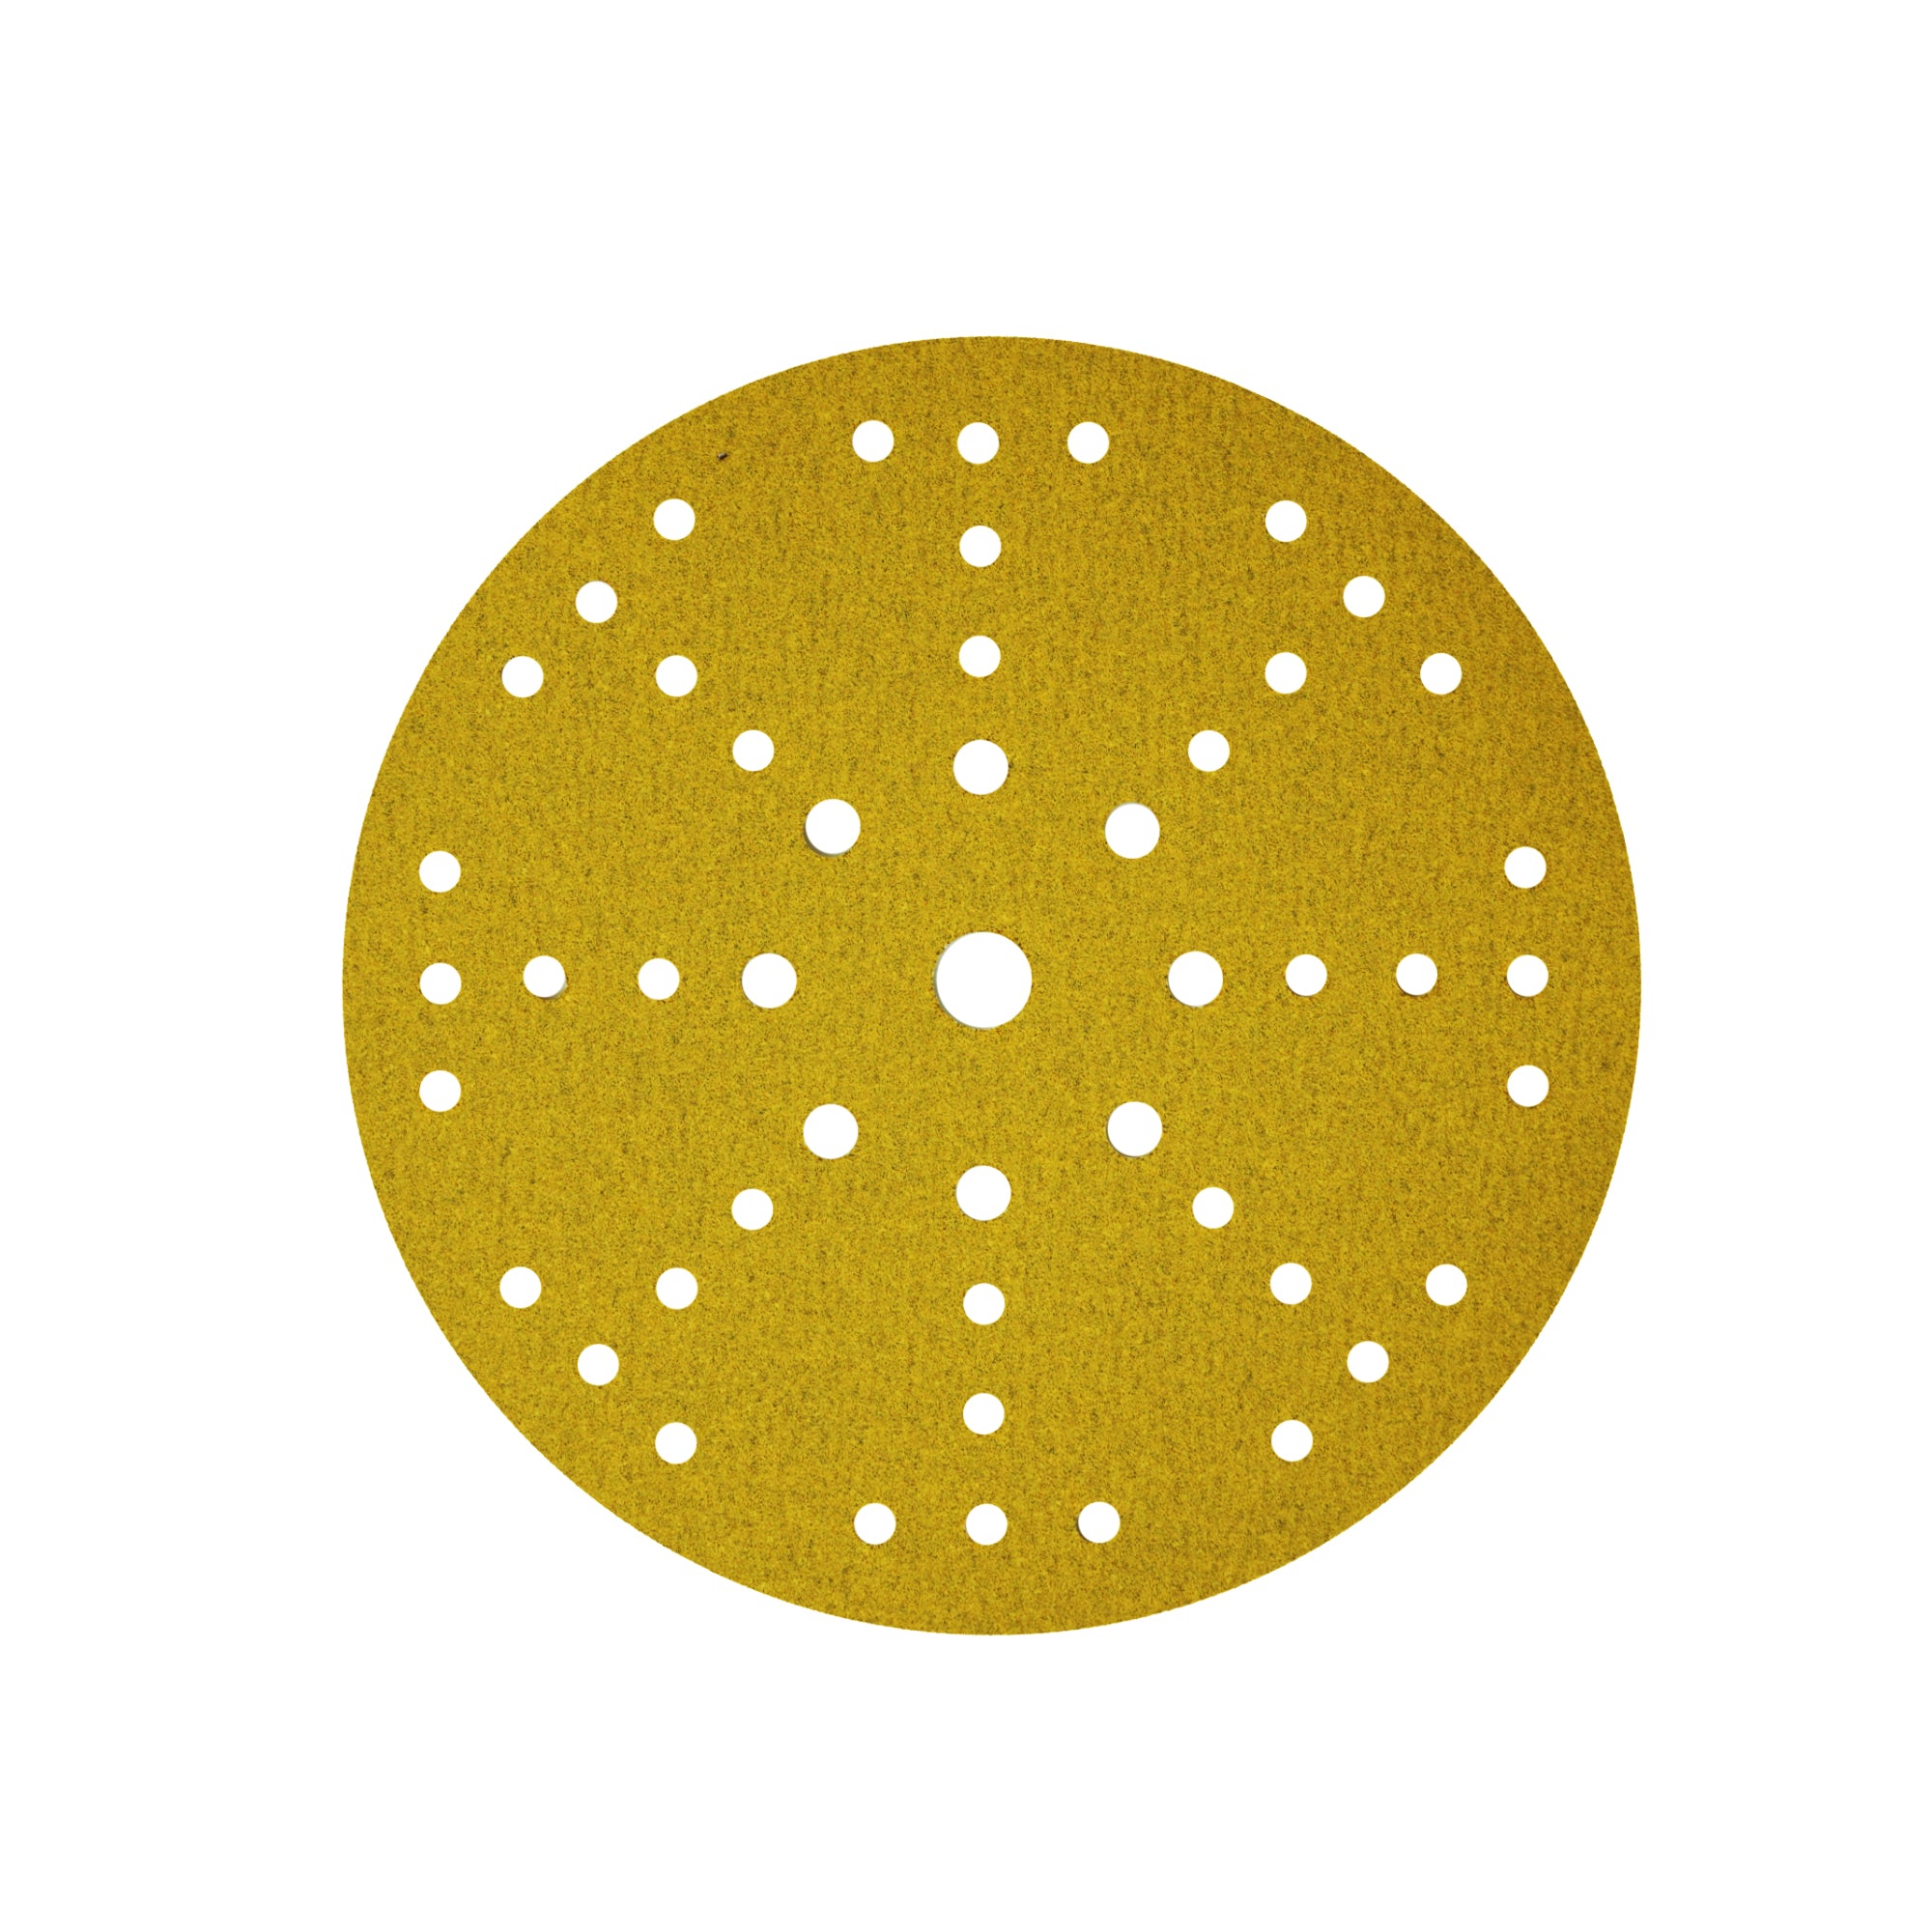 CSR 9" Round Premium Grade Gold Prosand Drywall Sanding Discs for Festool (5 Pack)